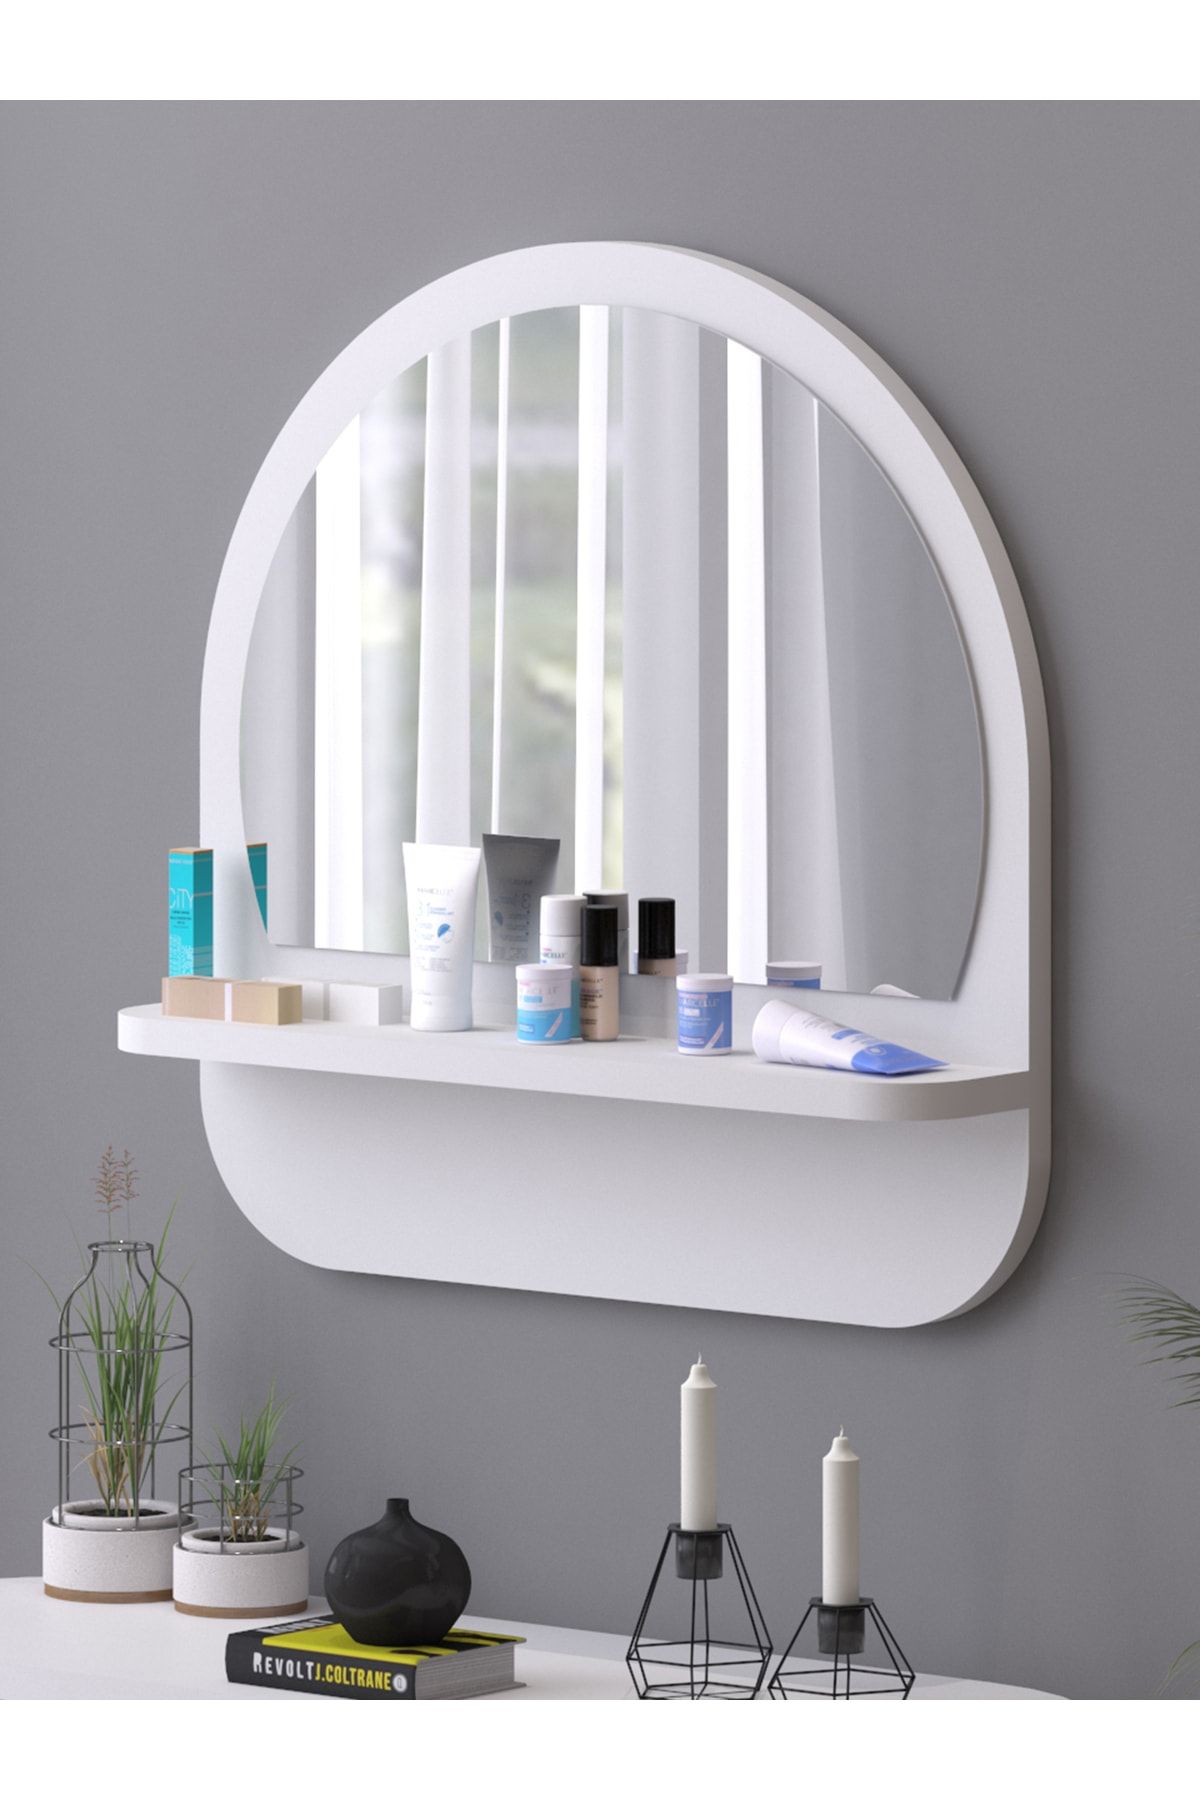 nysamo Raflı Oval 45 cm Koridor Dresuar Konsol Duvar Salon Banyo Ofis Çocuk Yatak Oda raflı Aynası